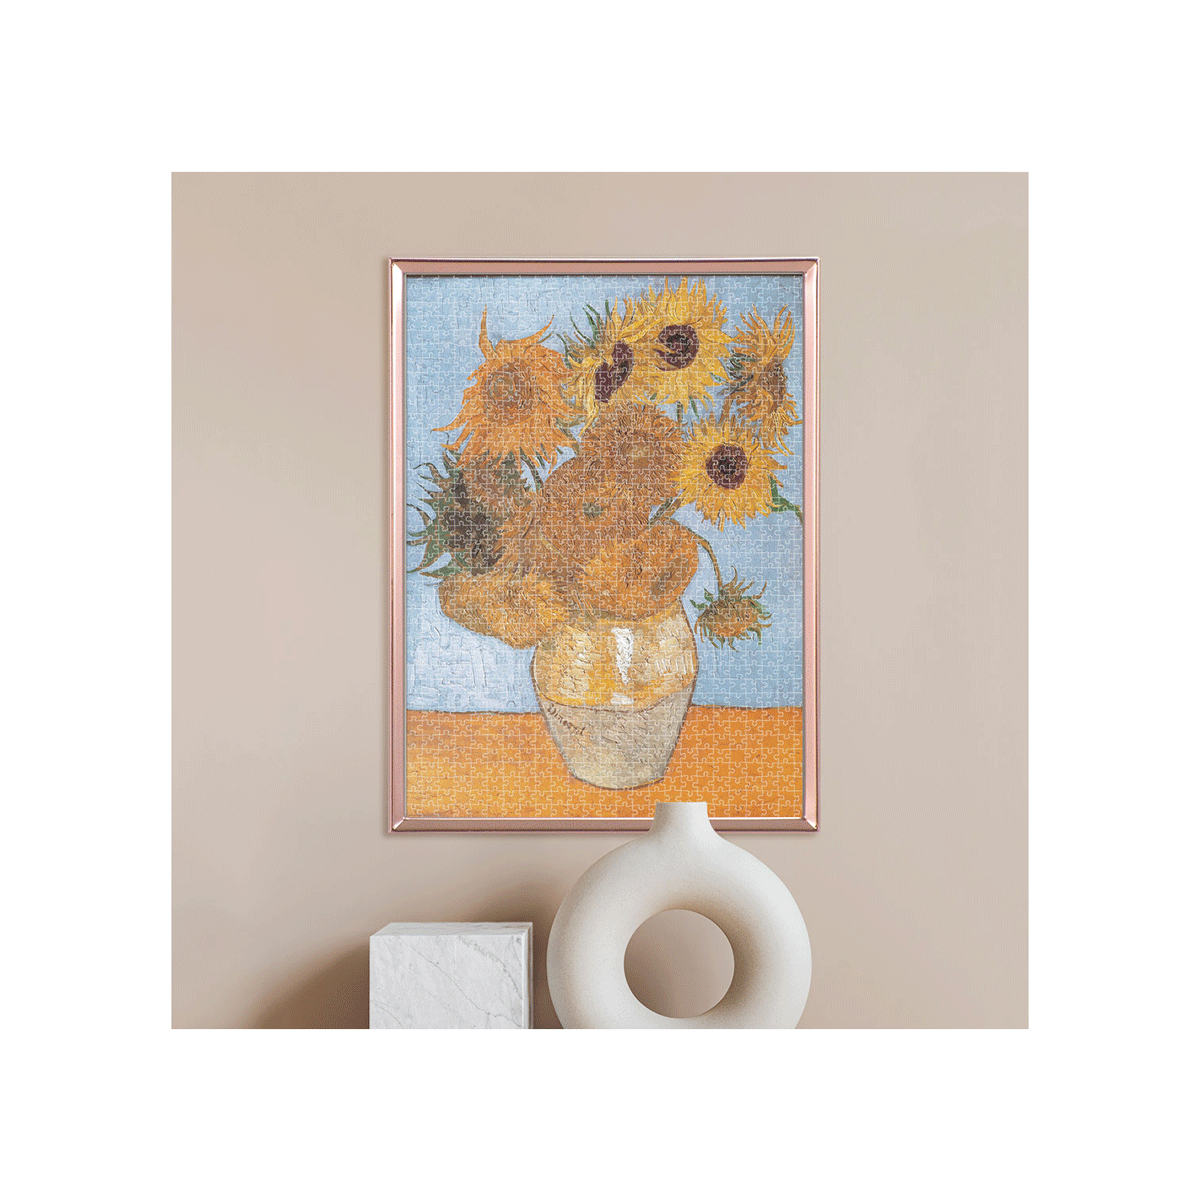 Clementoni puzzle museum collection - van gogh, "sunflowers" - 1000 pezzi, puzzle adulti - CLEMENTONI